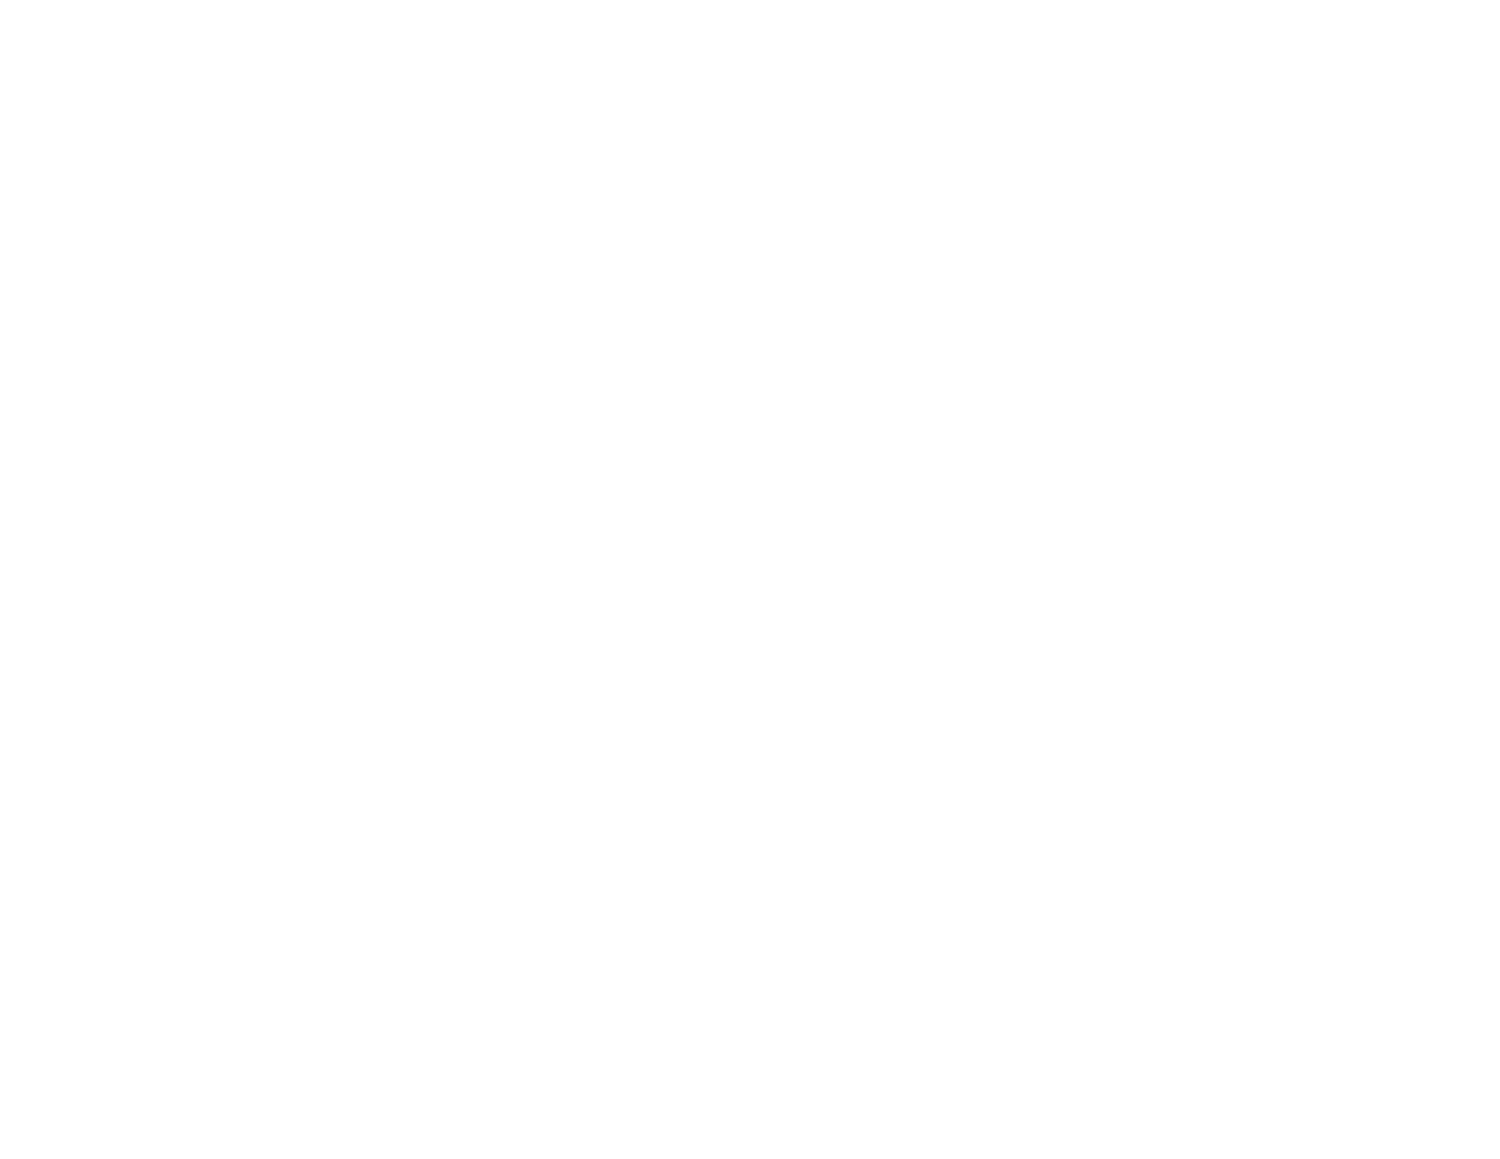 Wild Dreams Co